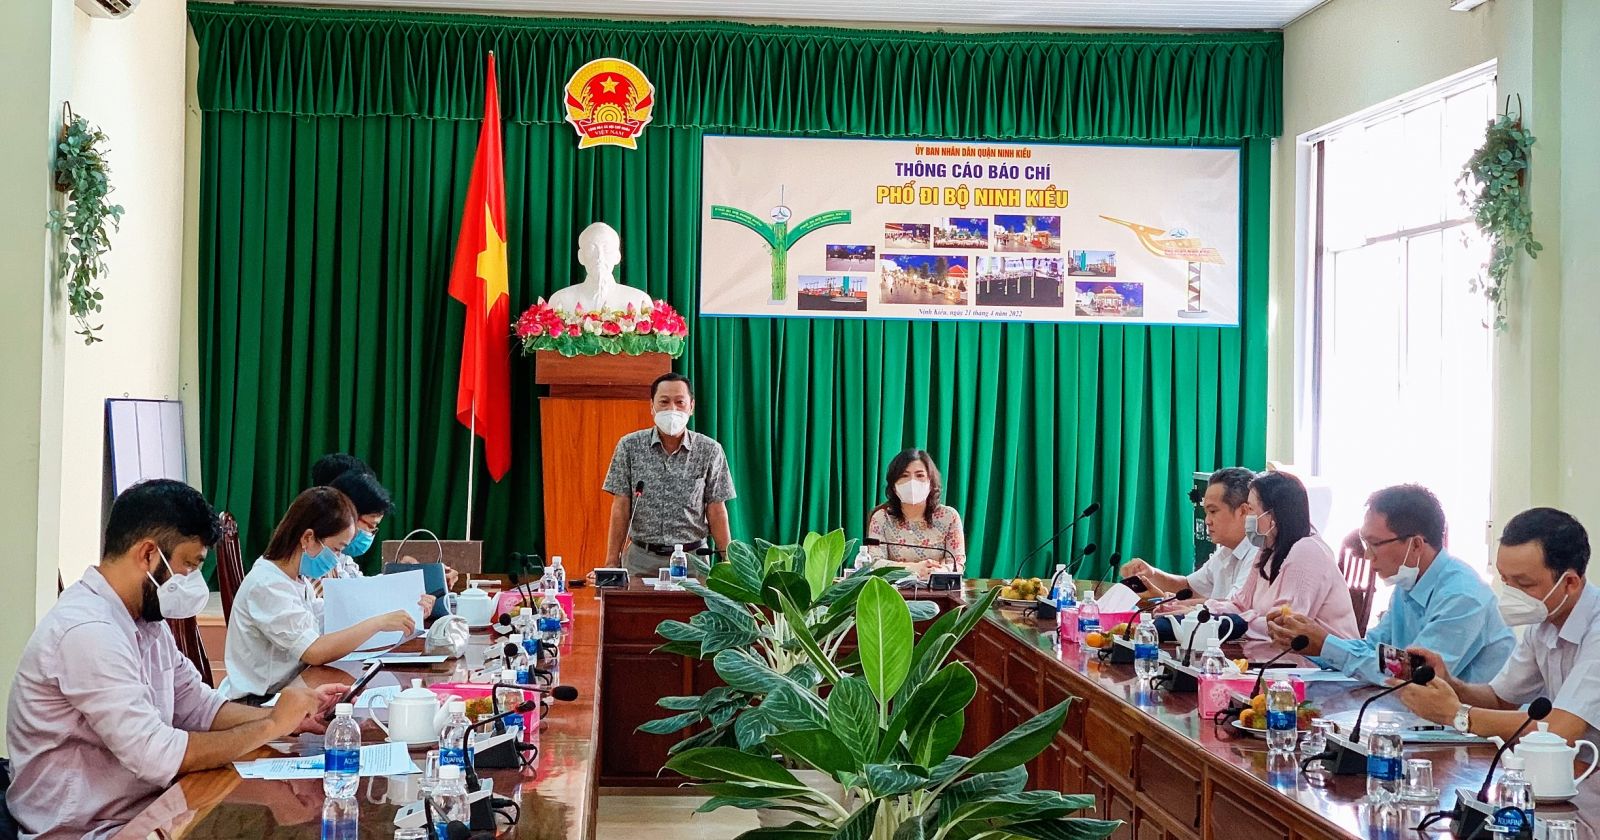 Buổi họp báo công bố về tuyến phố đi bộ Ninh Kiều. Ảnh: Kiều Mai